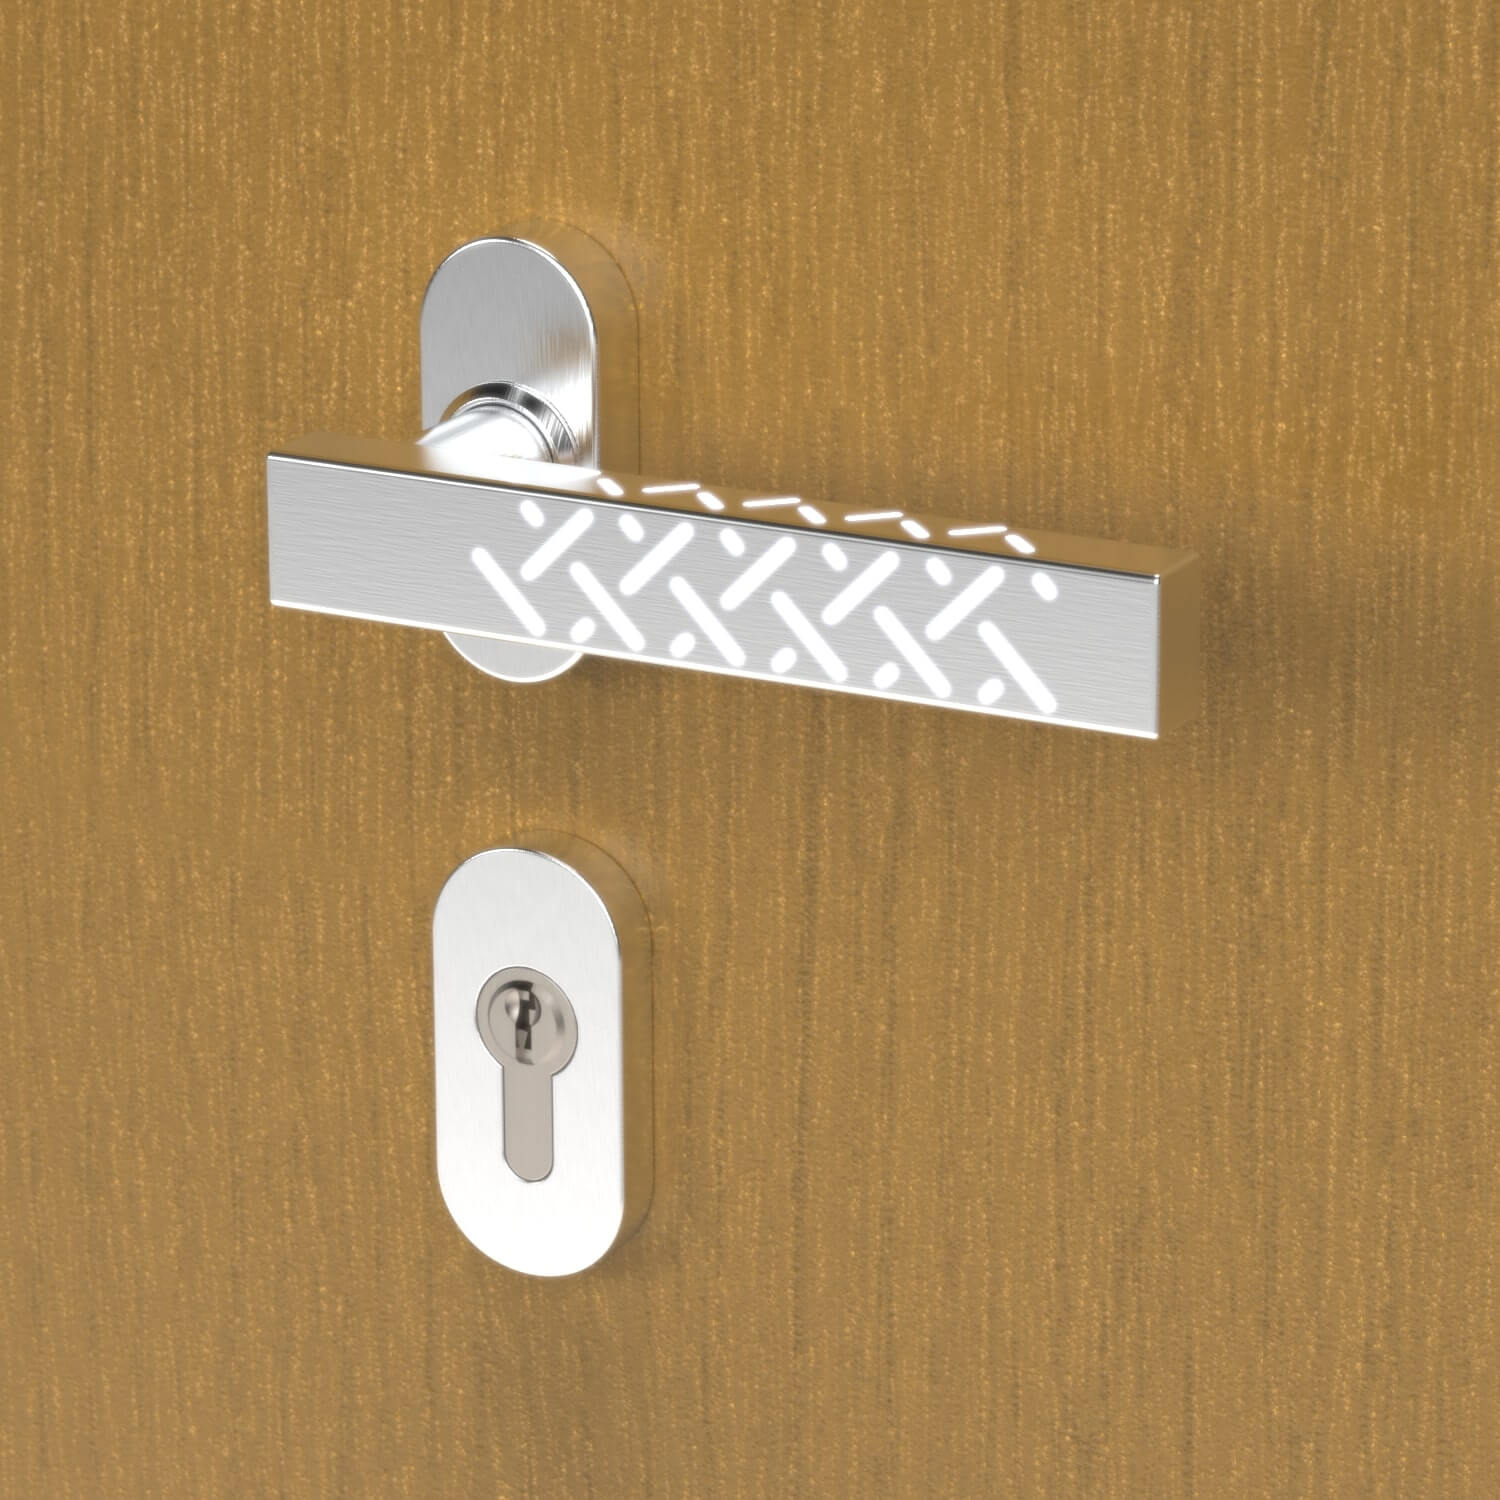 Wooden front door interior handle, angular design, made of stainless steel